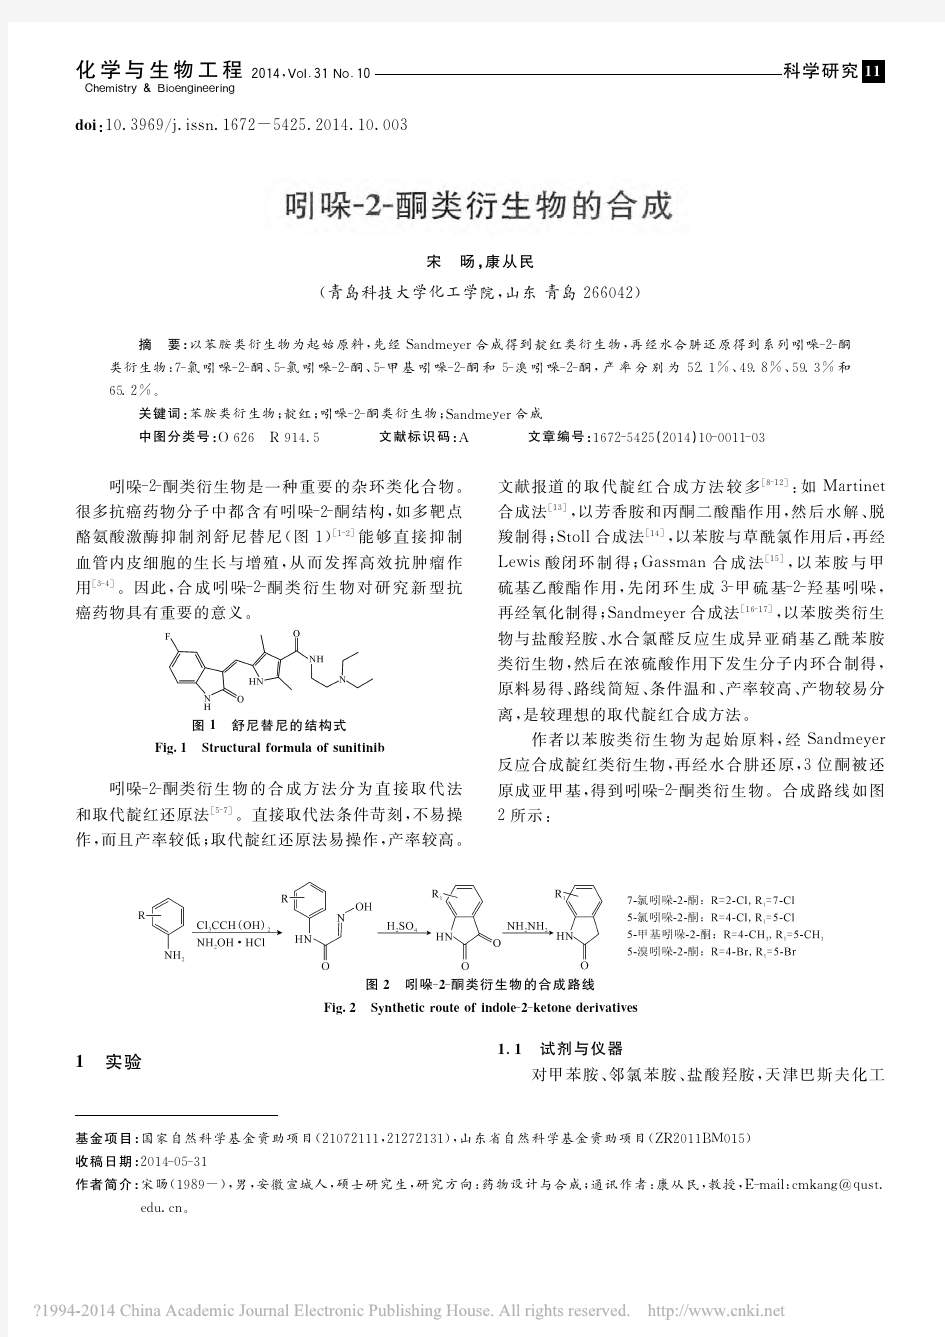 吲哚_2_酮类衍生物的合成